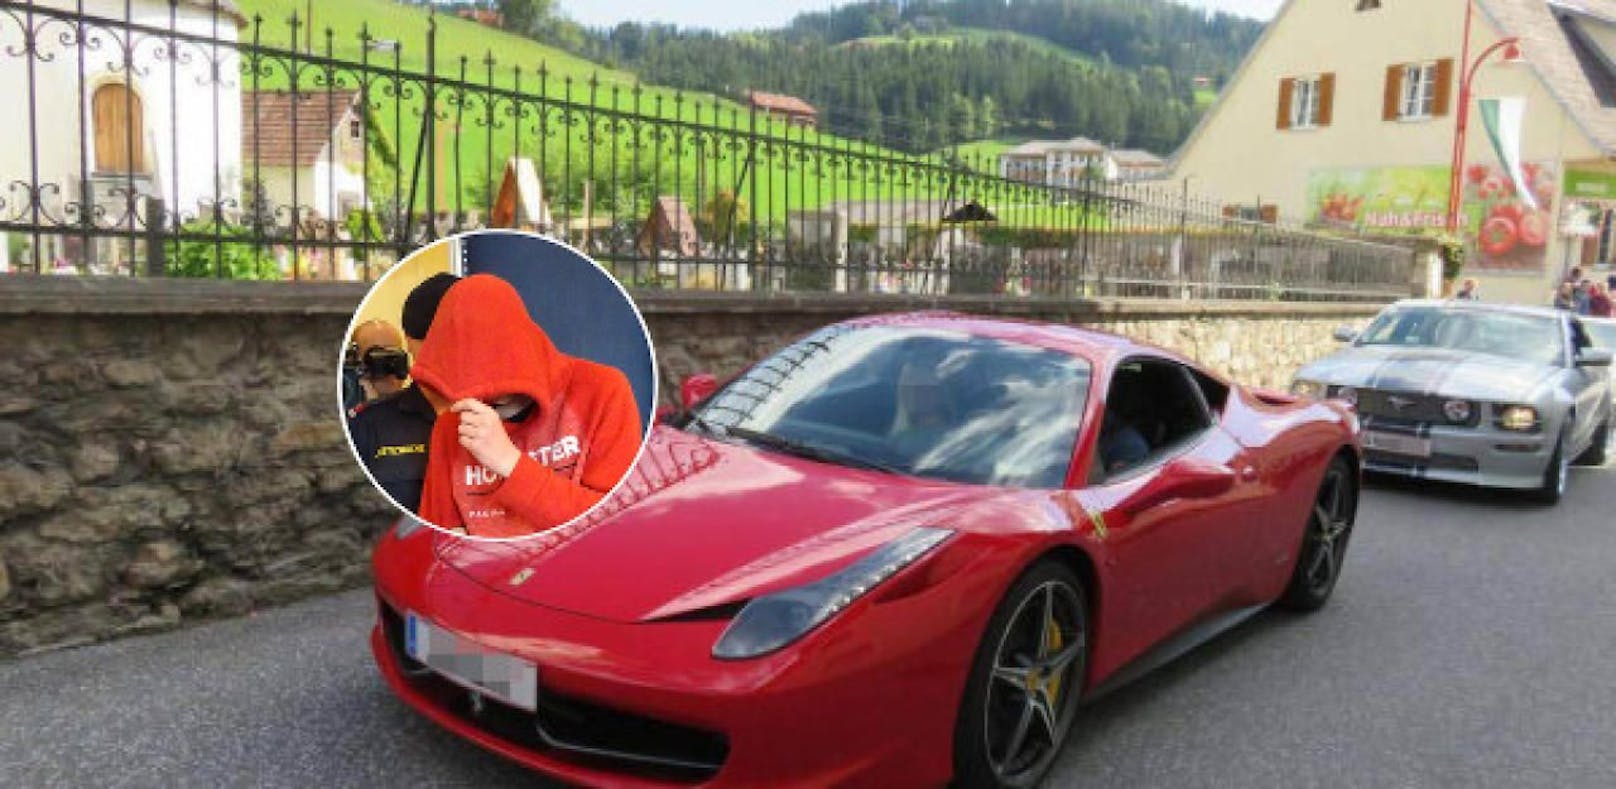 Passend zur Farbe des Ferraris war der Bursche vor Gericht gekleidet.